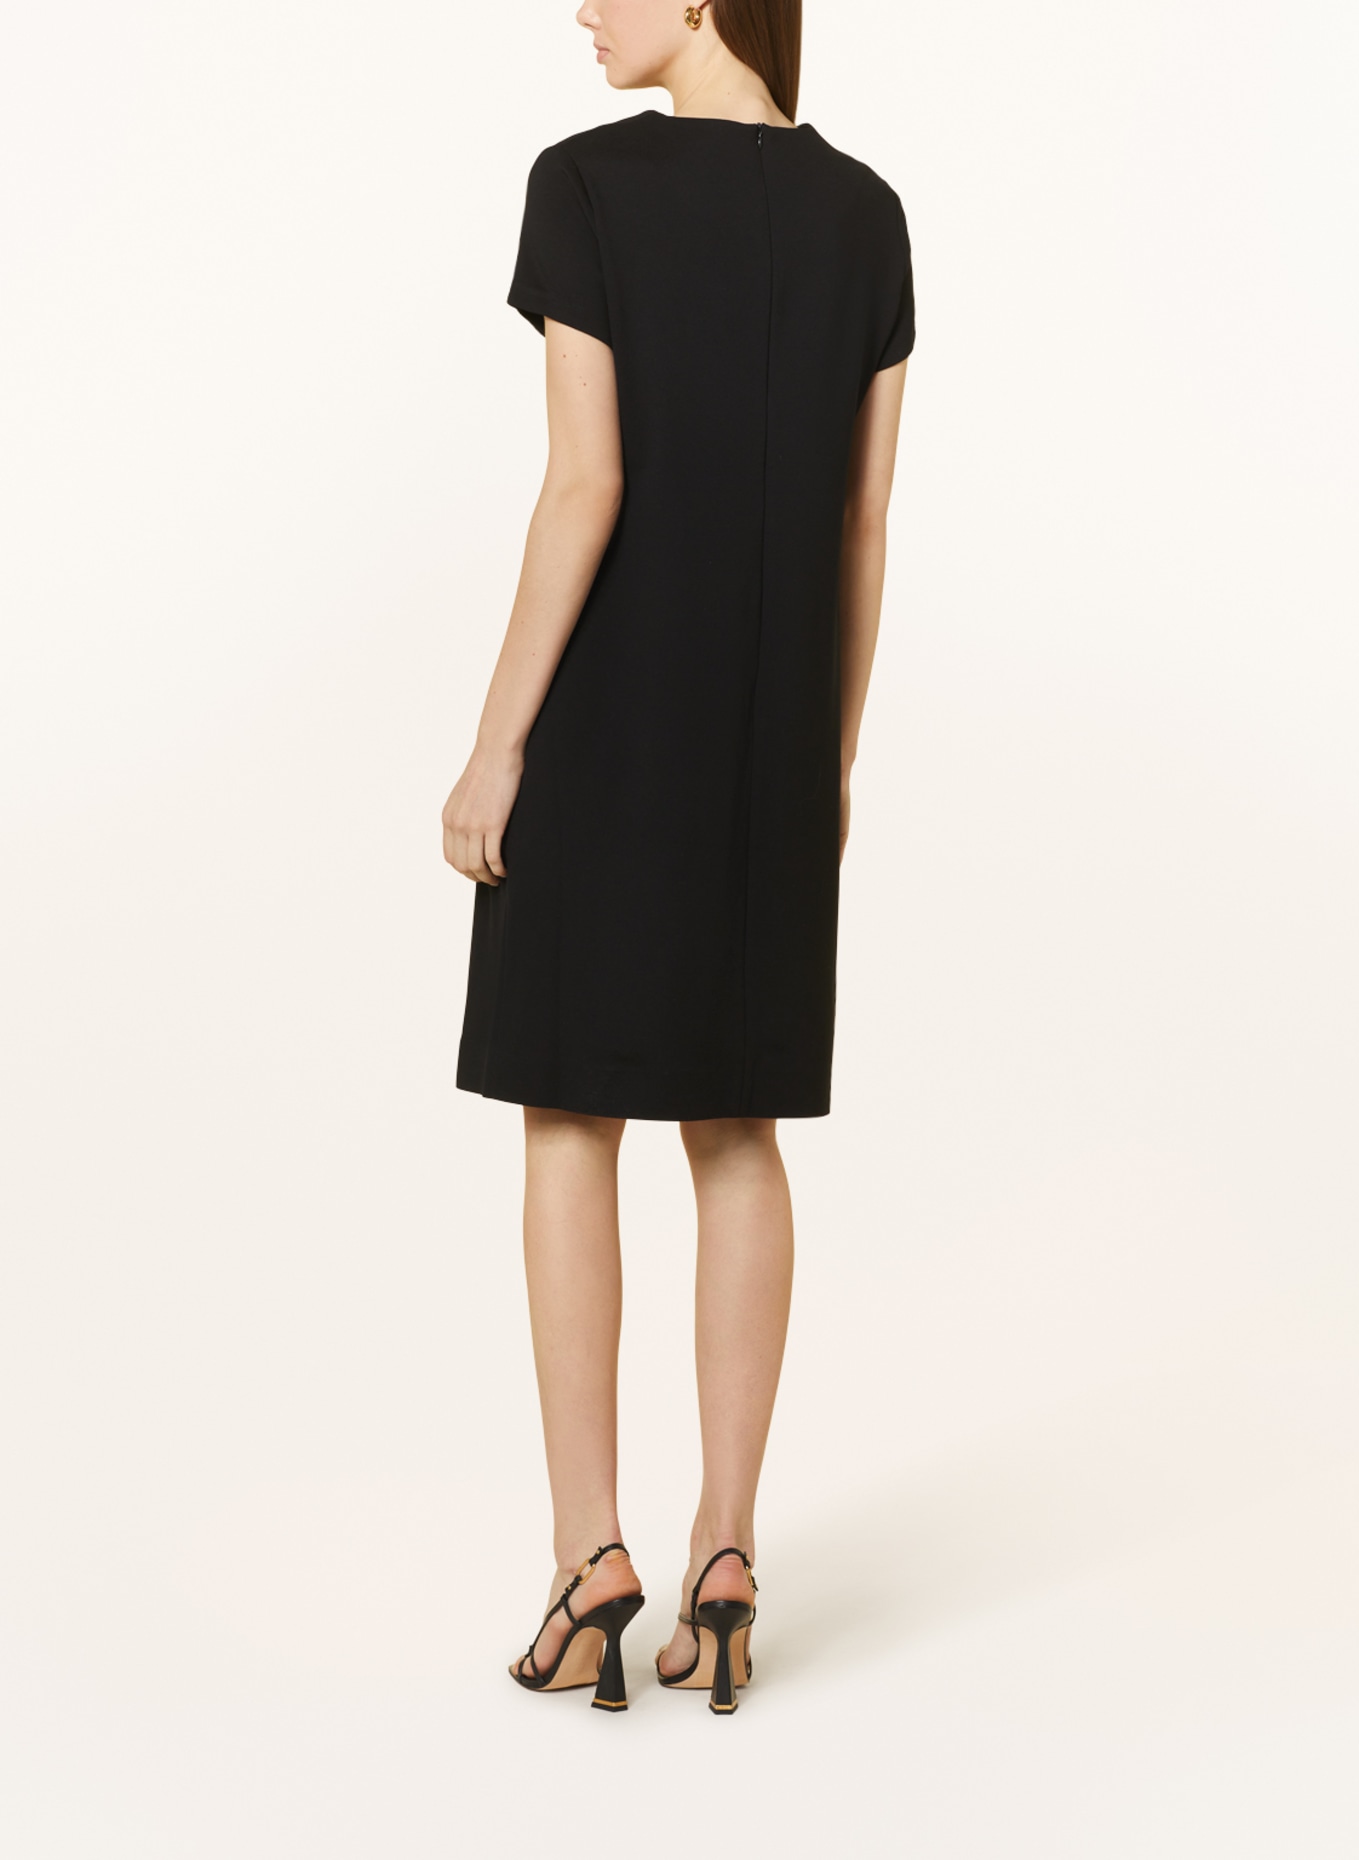 CATNOIR Dress, Color: BLACK (Image 3)